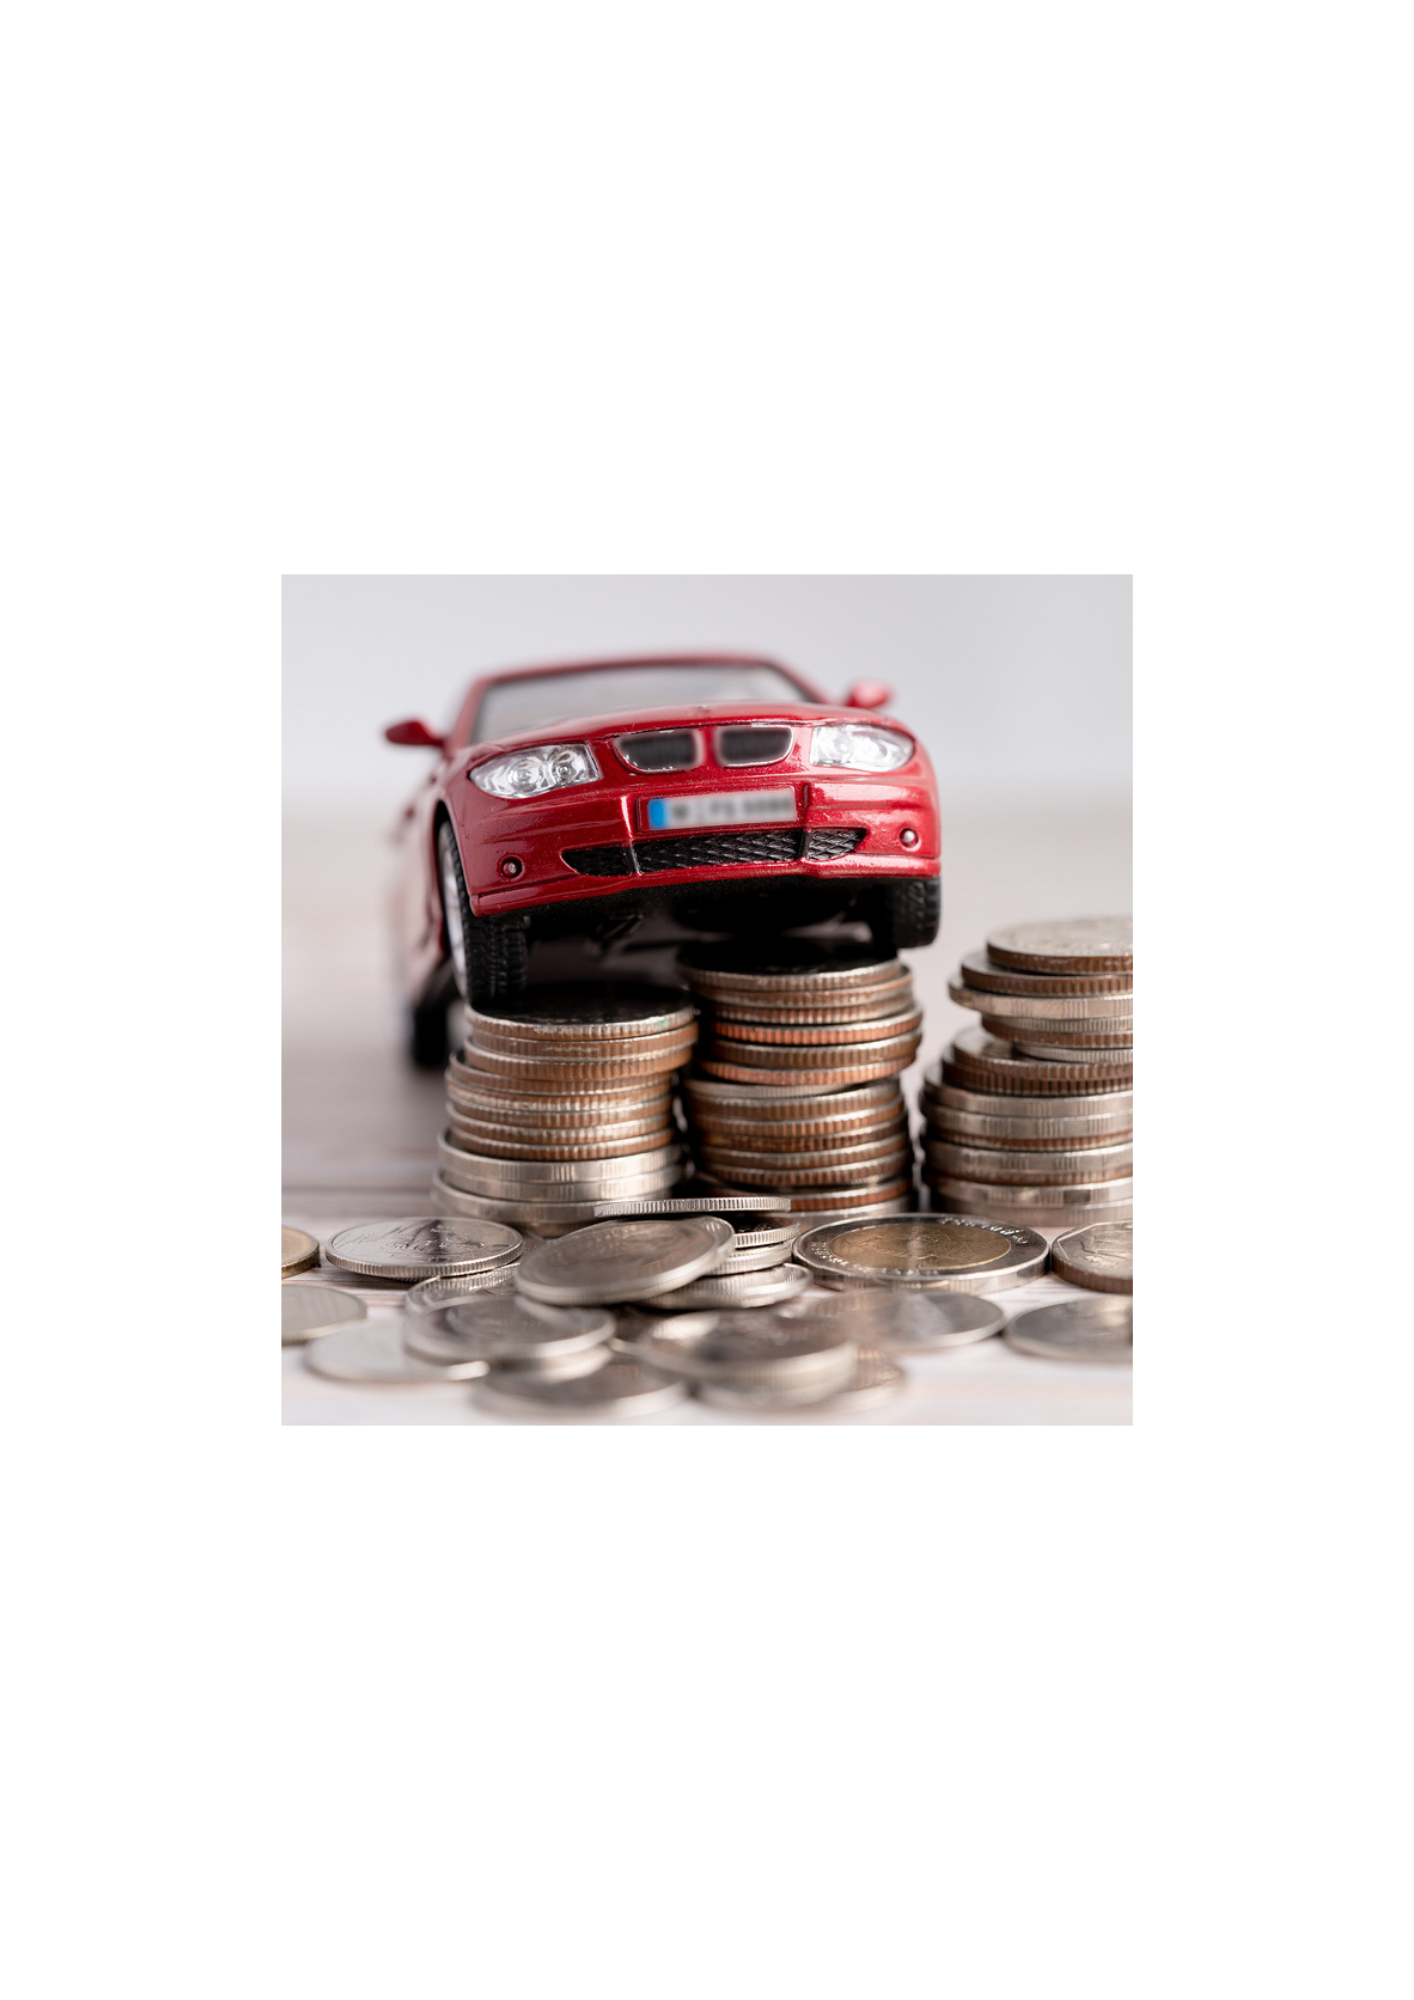 Si compraste coche nuevo en 2021 ¿tienes que incluir las ayudas que recibiste en tu declaración de la renta?